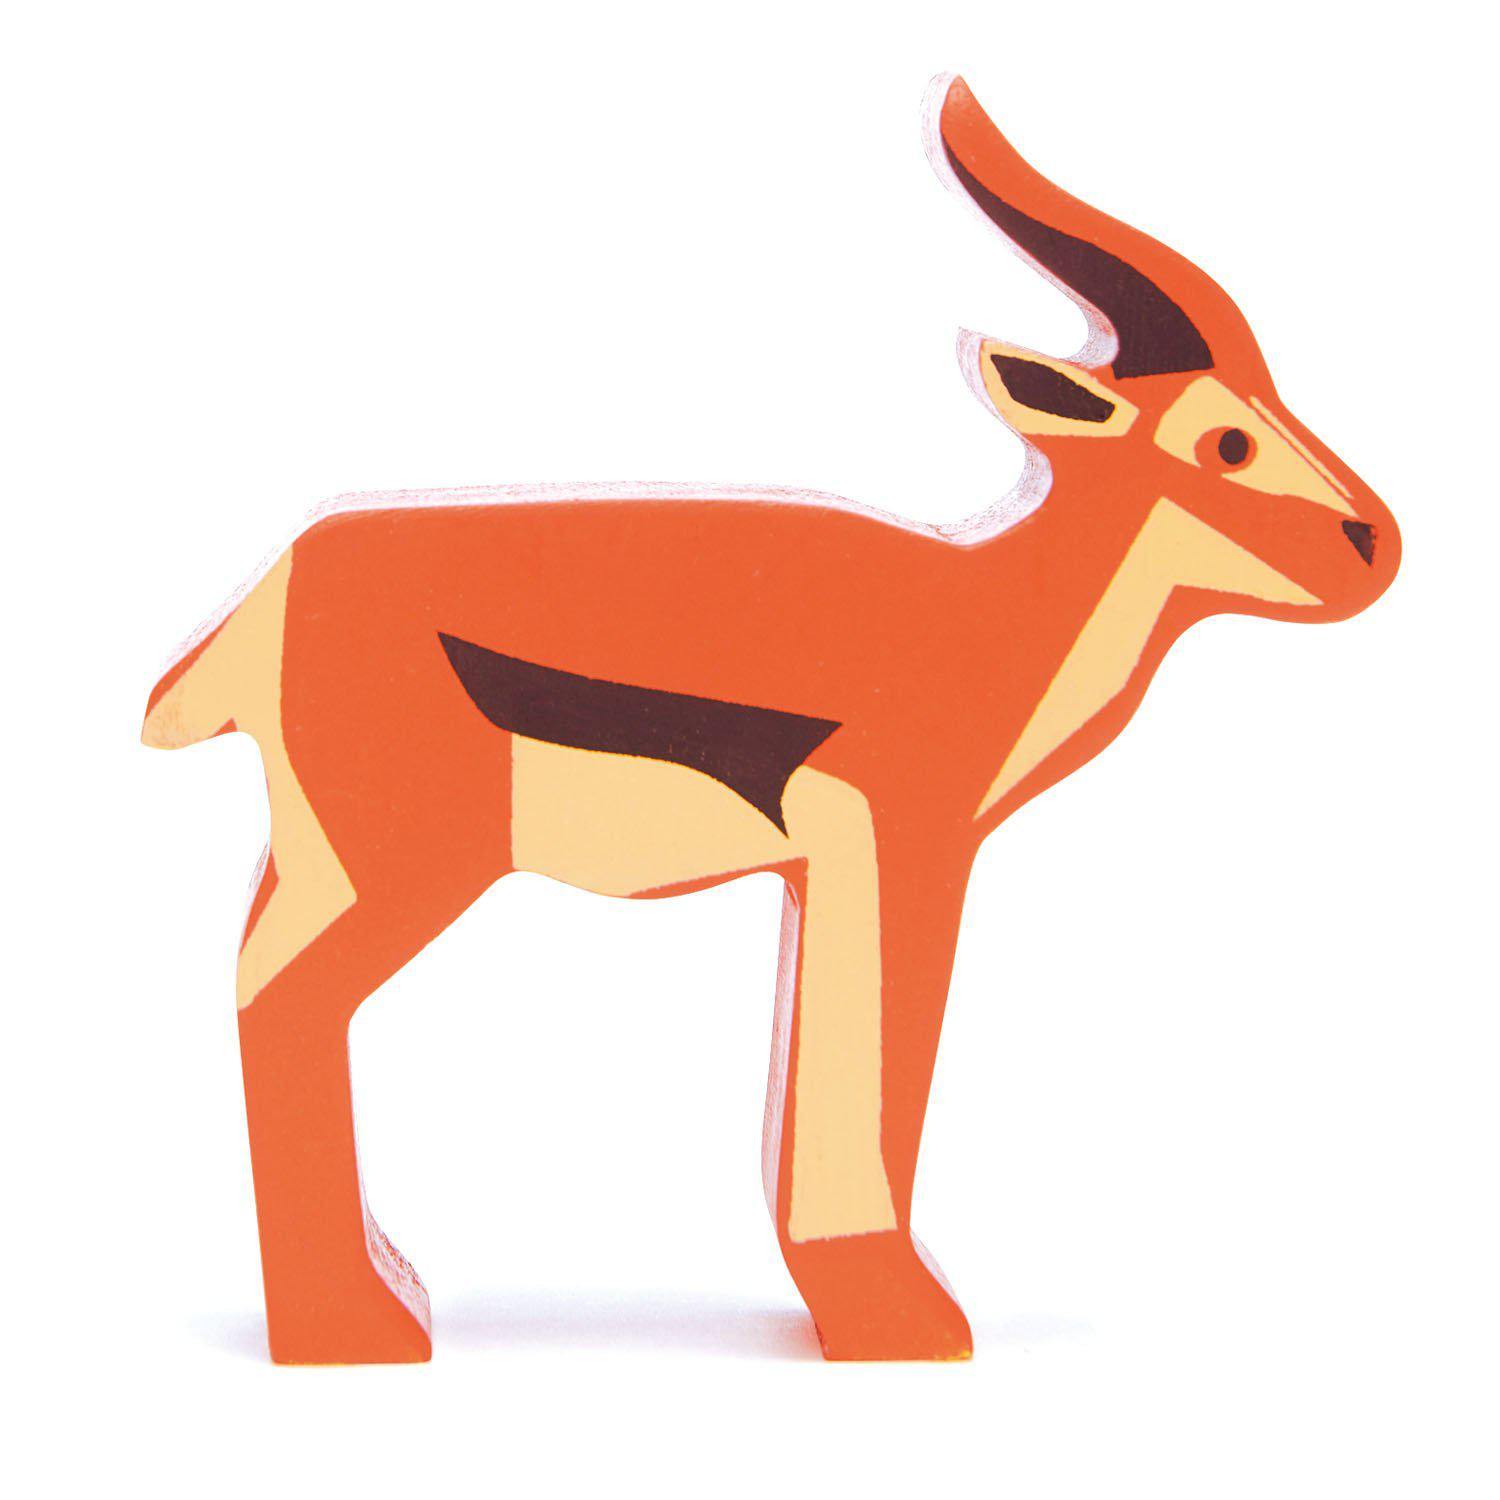 Antilop, prémium minőségű fából - Antelope - Tender Leaf Toys-Tender Leaf Toys-1-Játszma.ro - A maradandó élmények boltja